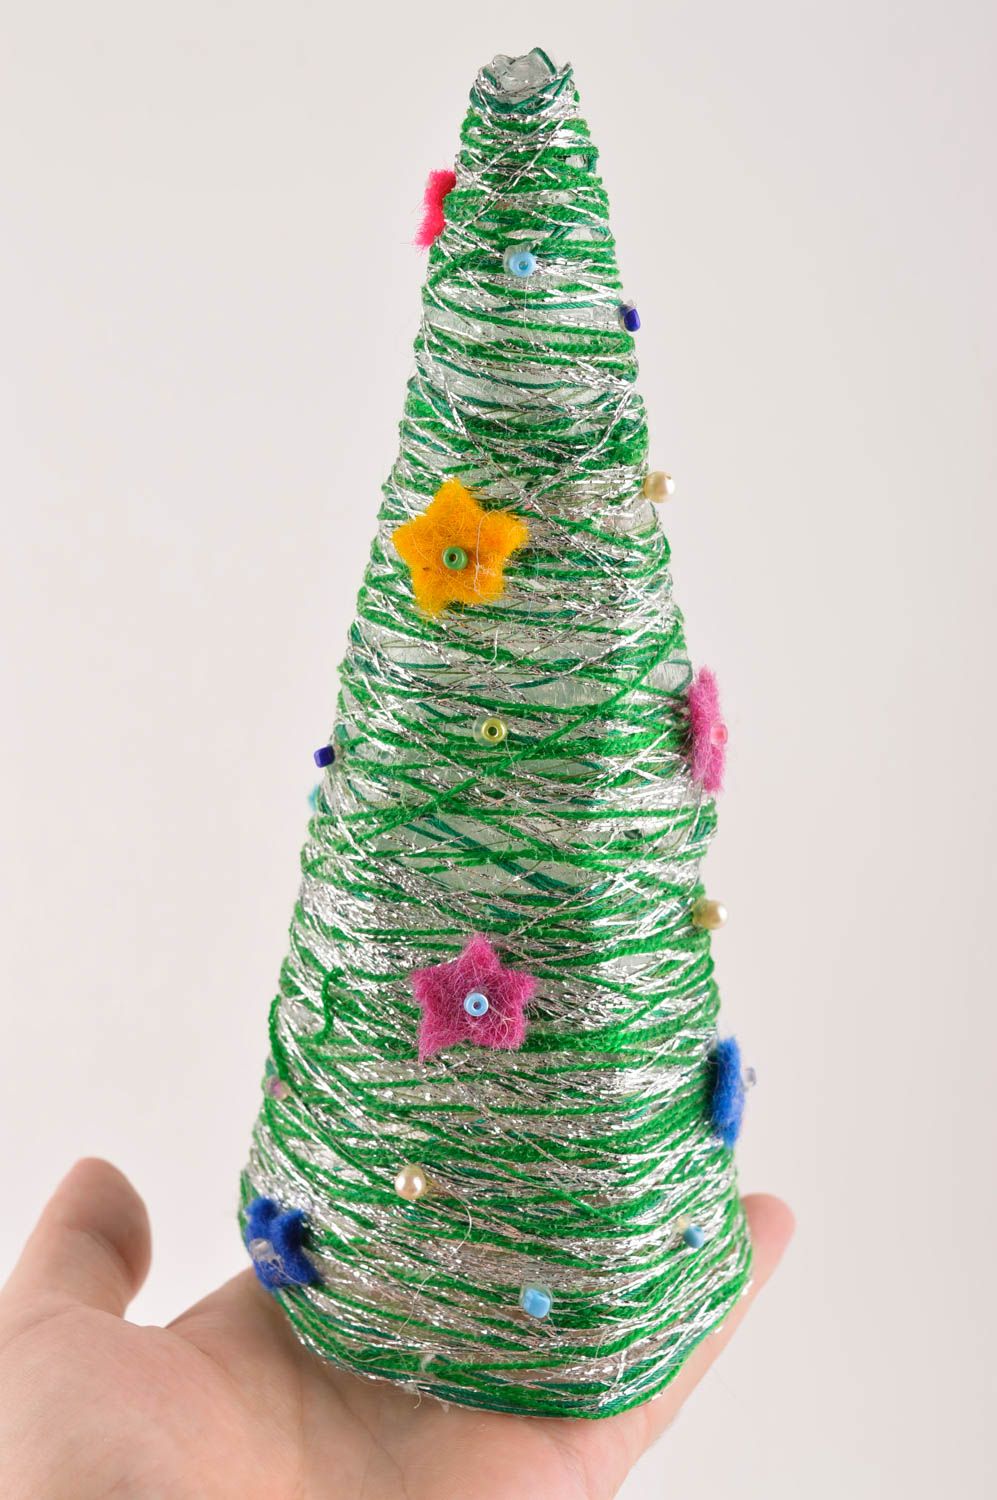 Sapin de noel artificiel fait main Décoration de Noël Idée cadeau original photo 5